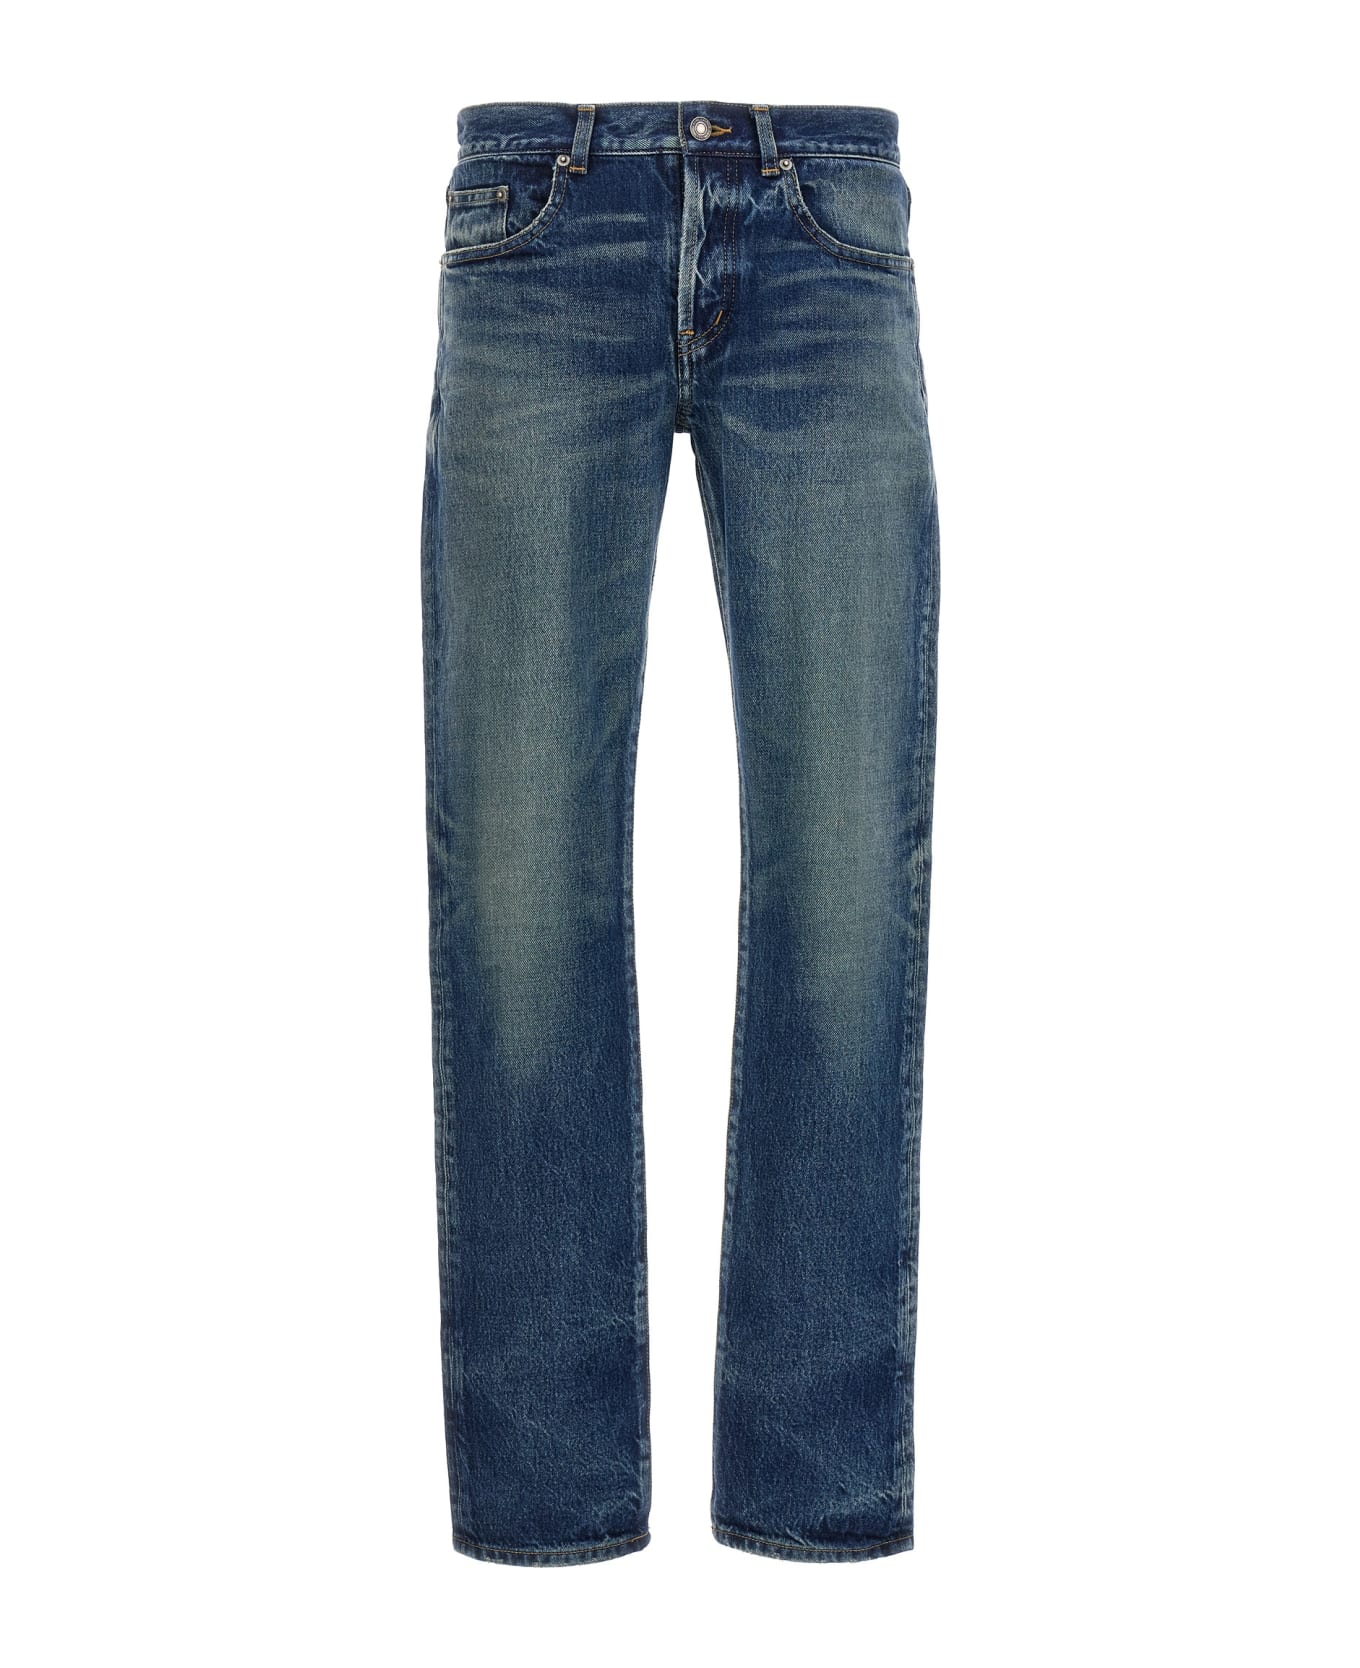 Saint Laurent Slim Fit Denim Jeans - Blue